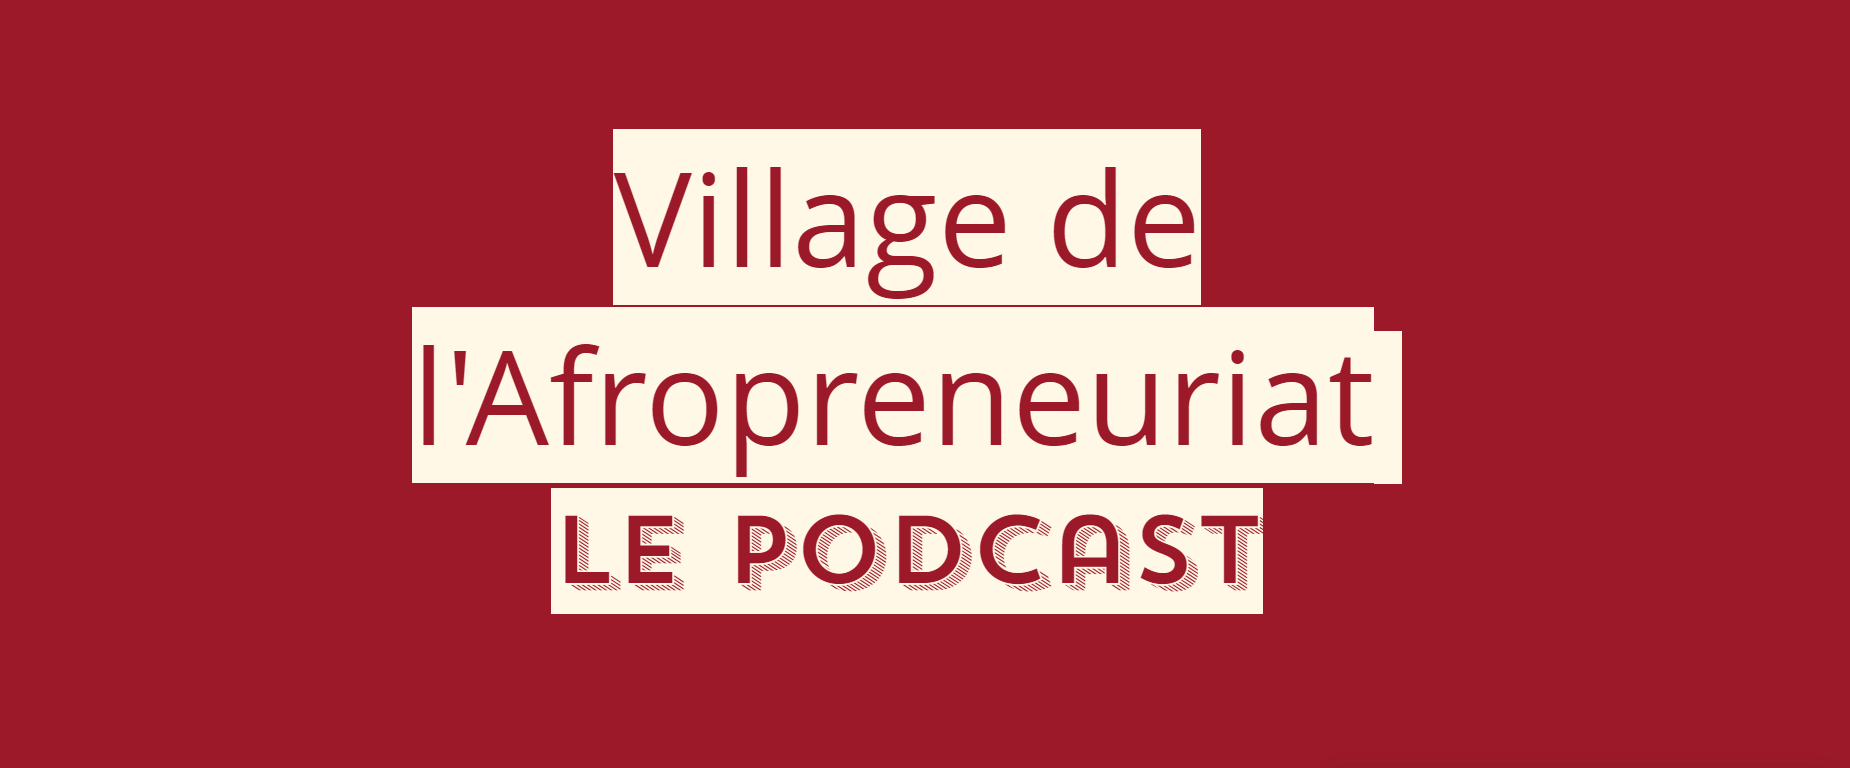 Le podcast le Village de l’Afropreneuriat révèle certaines initiatives entrepreneuriales en Afrique